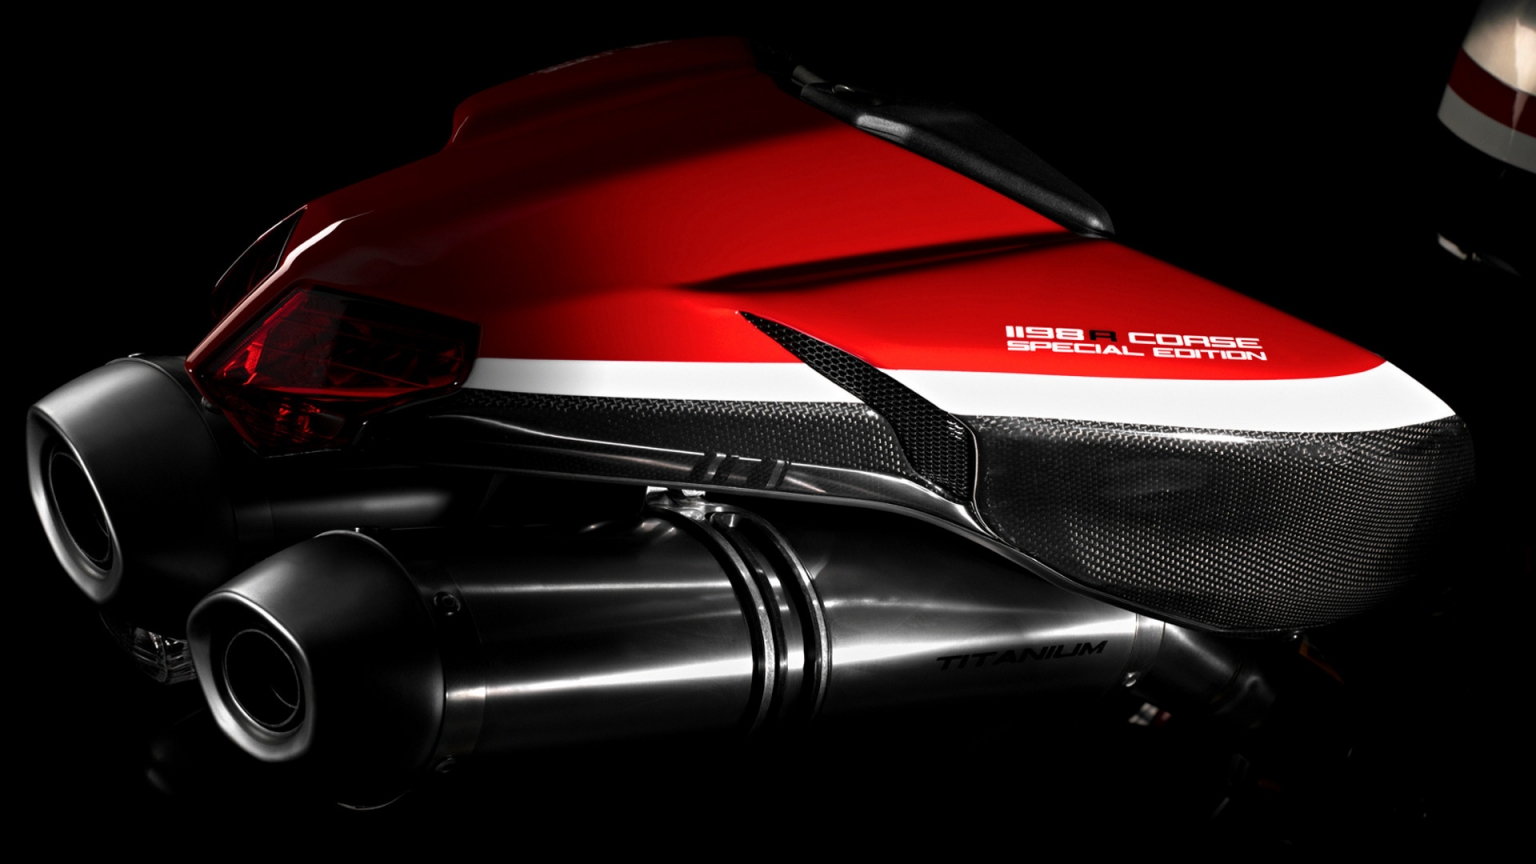 Ducati Superbike-1198-R-Corse Rear for 1536 x 864 HDTV resolution